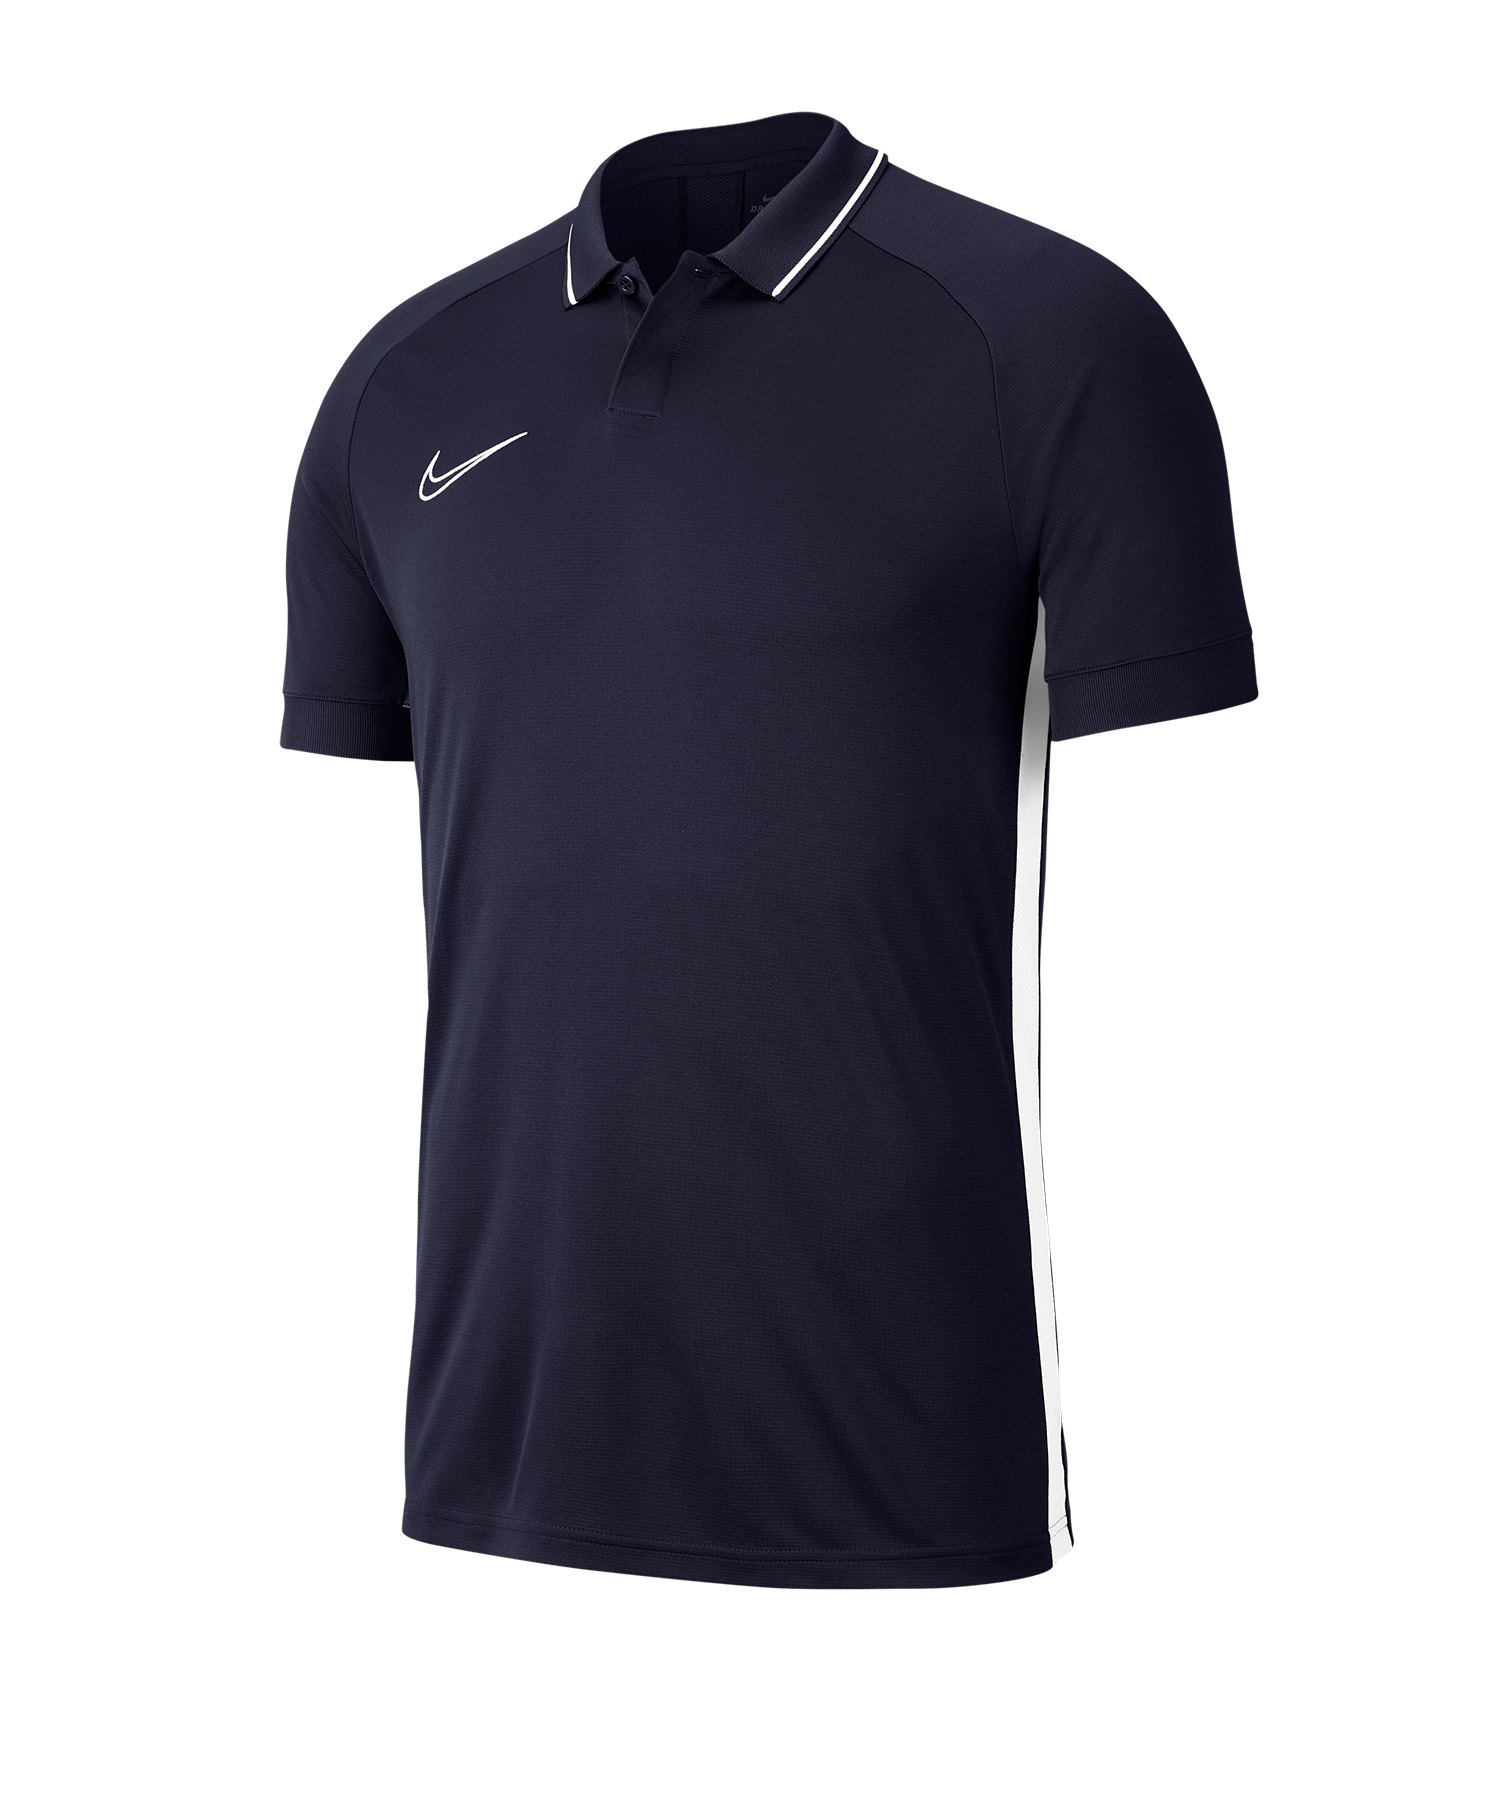 Nike Academy 19 Poloshirt Blau Weiss F451 - blau